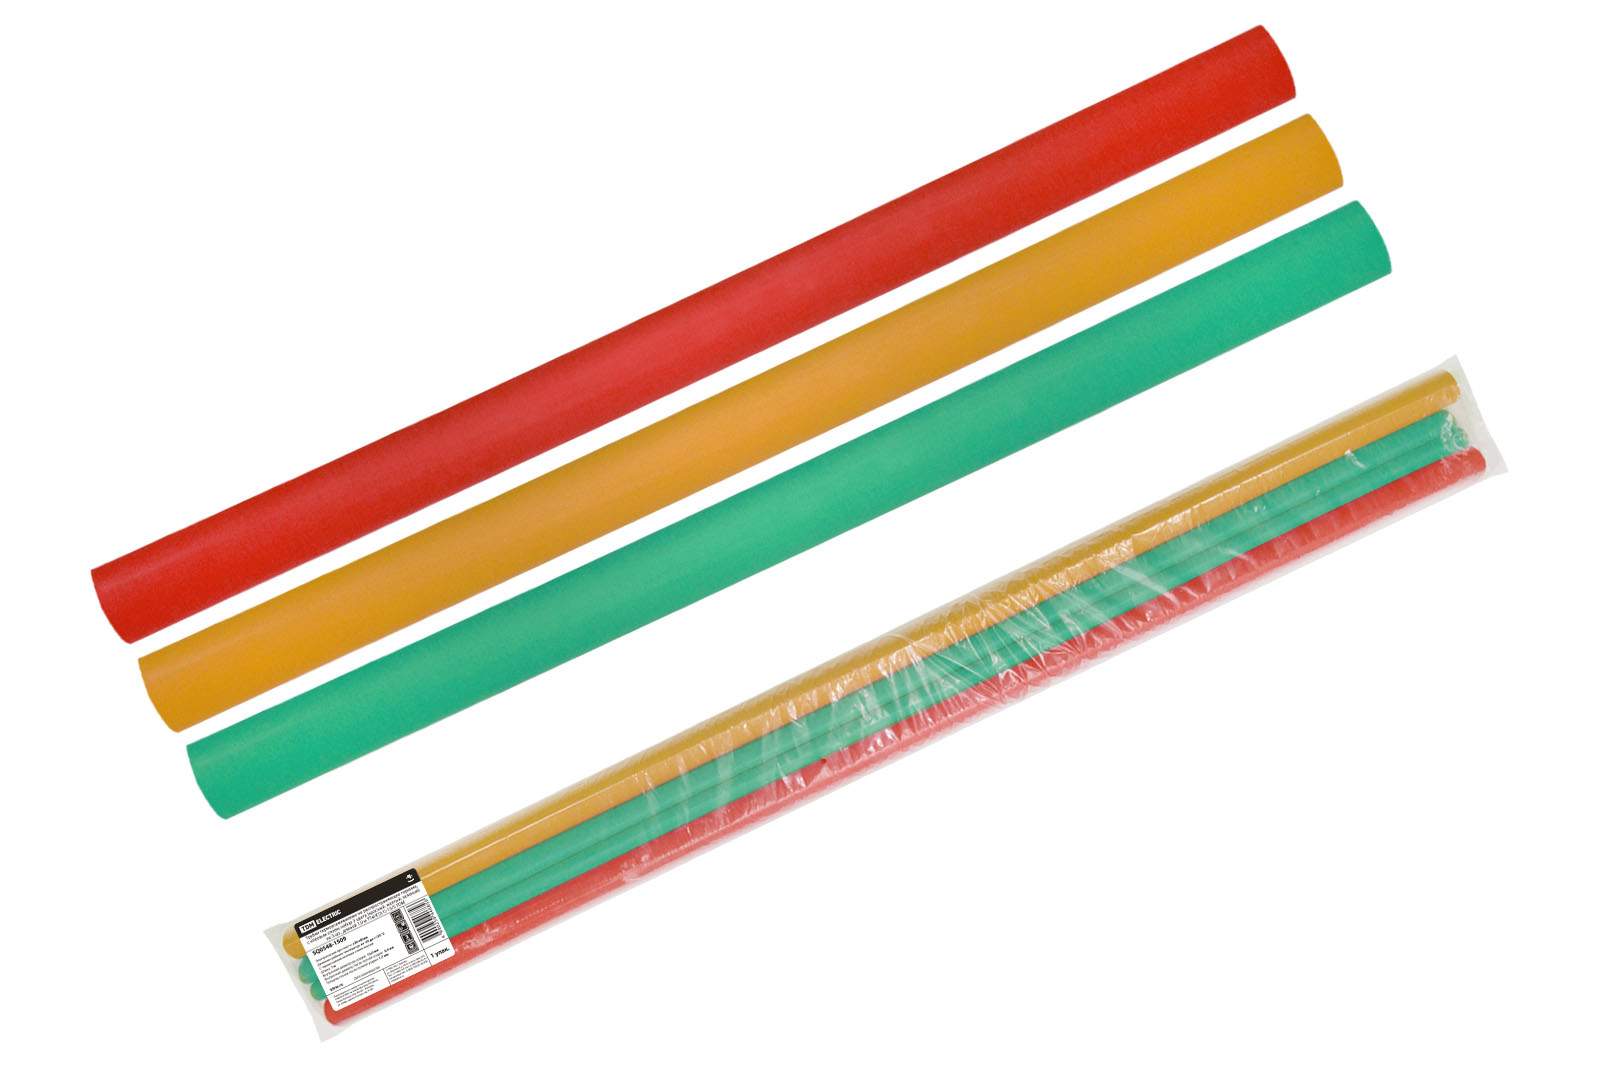 трубки термоусаживаемые, клеевые, набор 3 цвета по 3 шт. тткнг(3:1)-15/5 tdm от BTSprom.by